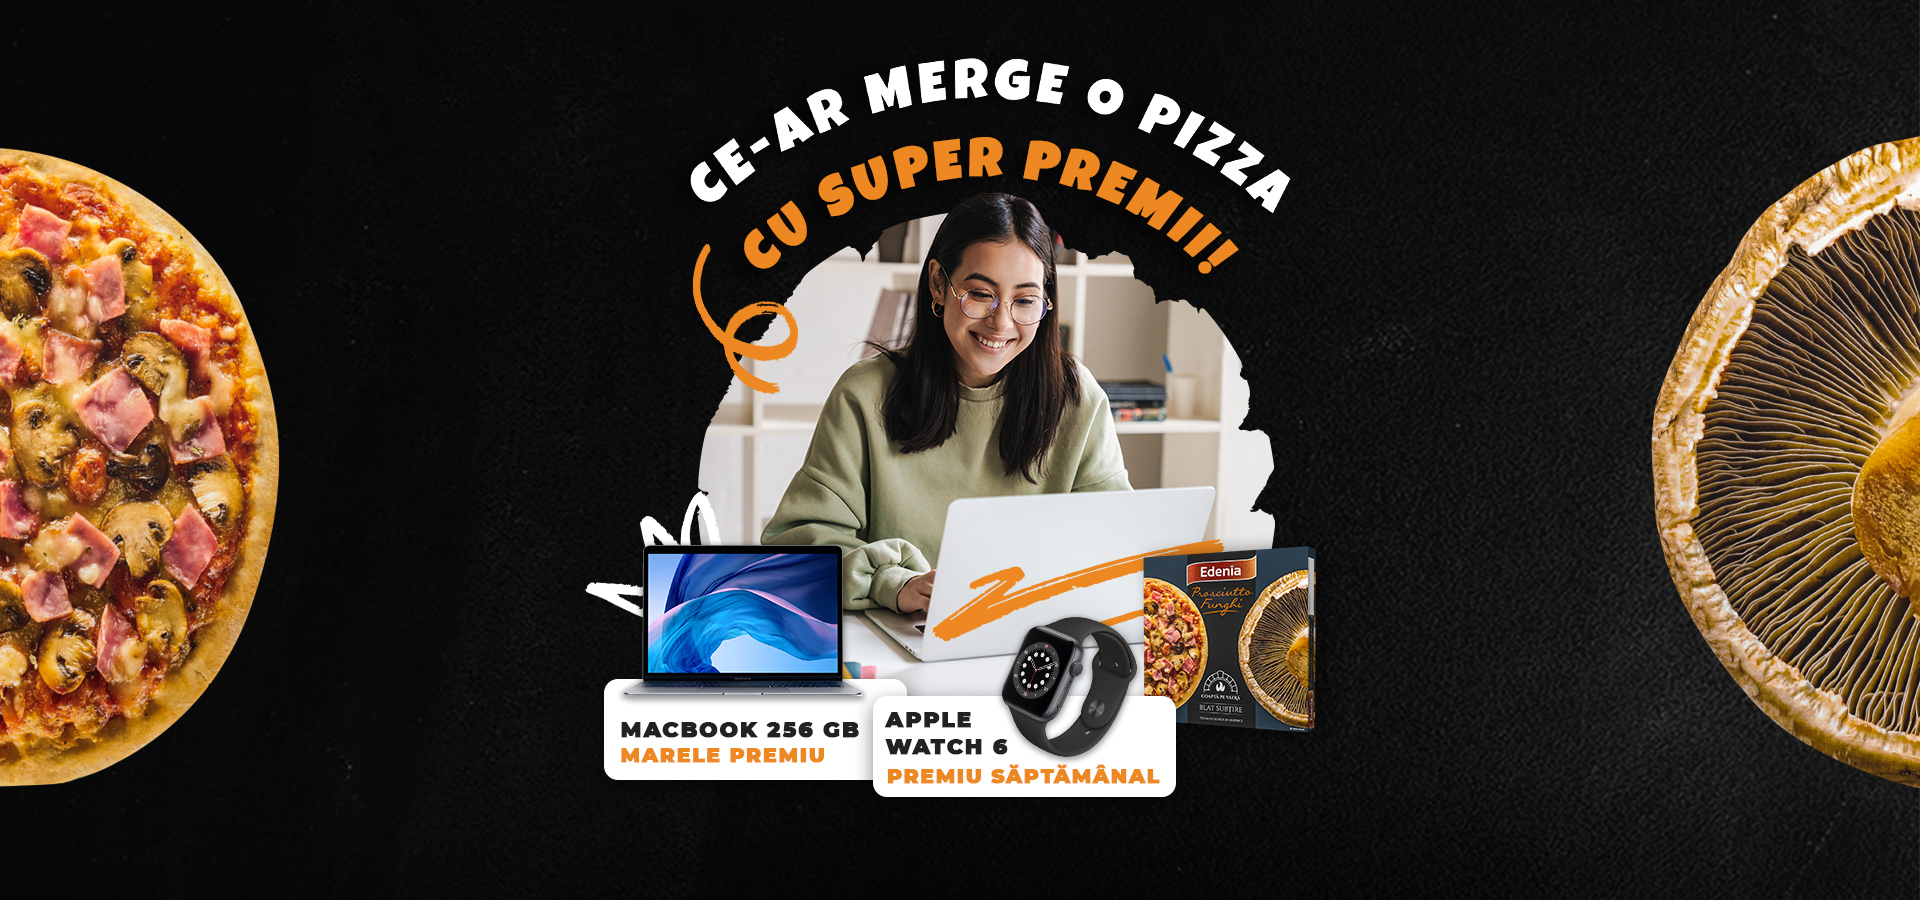 Ce-ar merge o pizza cu super premii - Etapa 2 - campanie incheiata